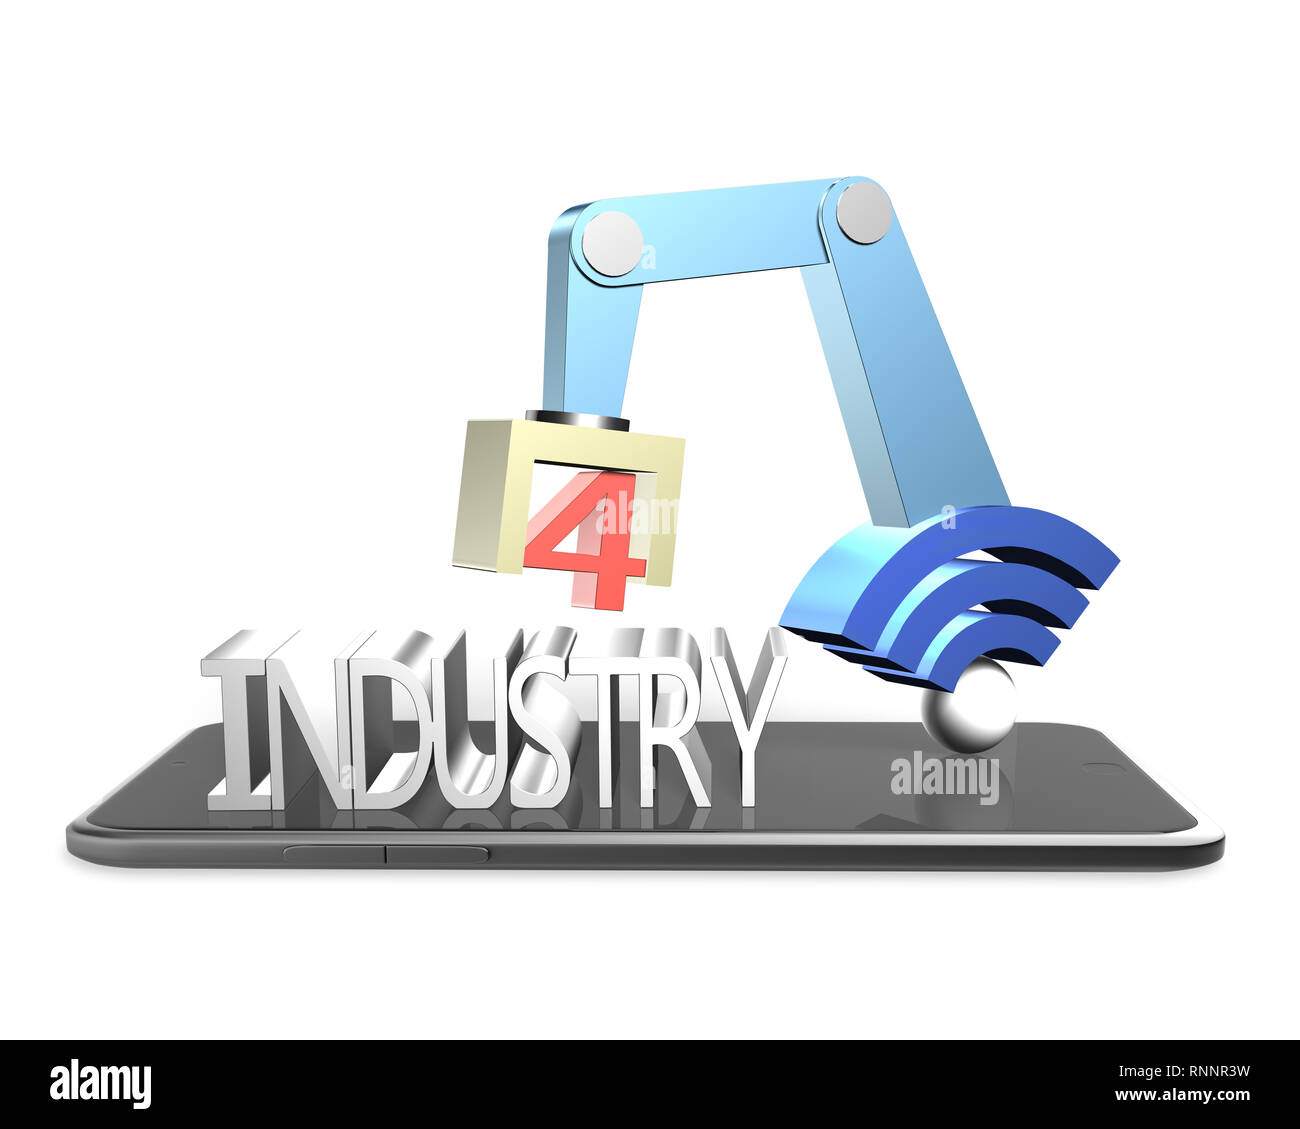 Concept de l'industrie 4.0. Illustration 3D du bras robot avec connexion Wi-Fi gratuite et de l'industrie signe texte 4.0, sur la tablette numérique. Banque D'Images